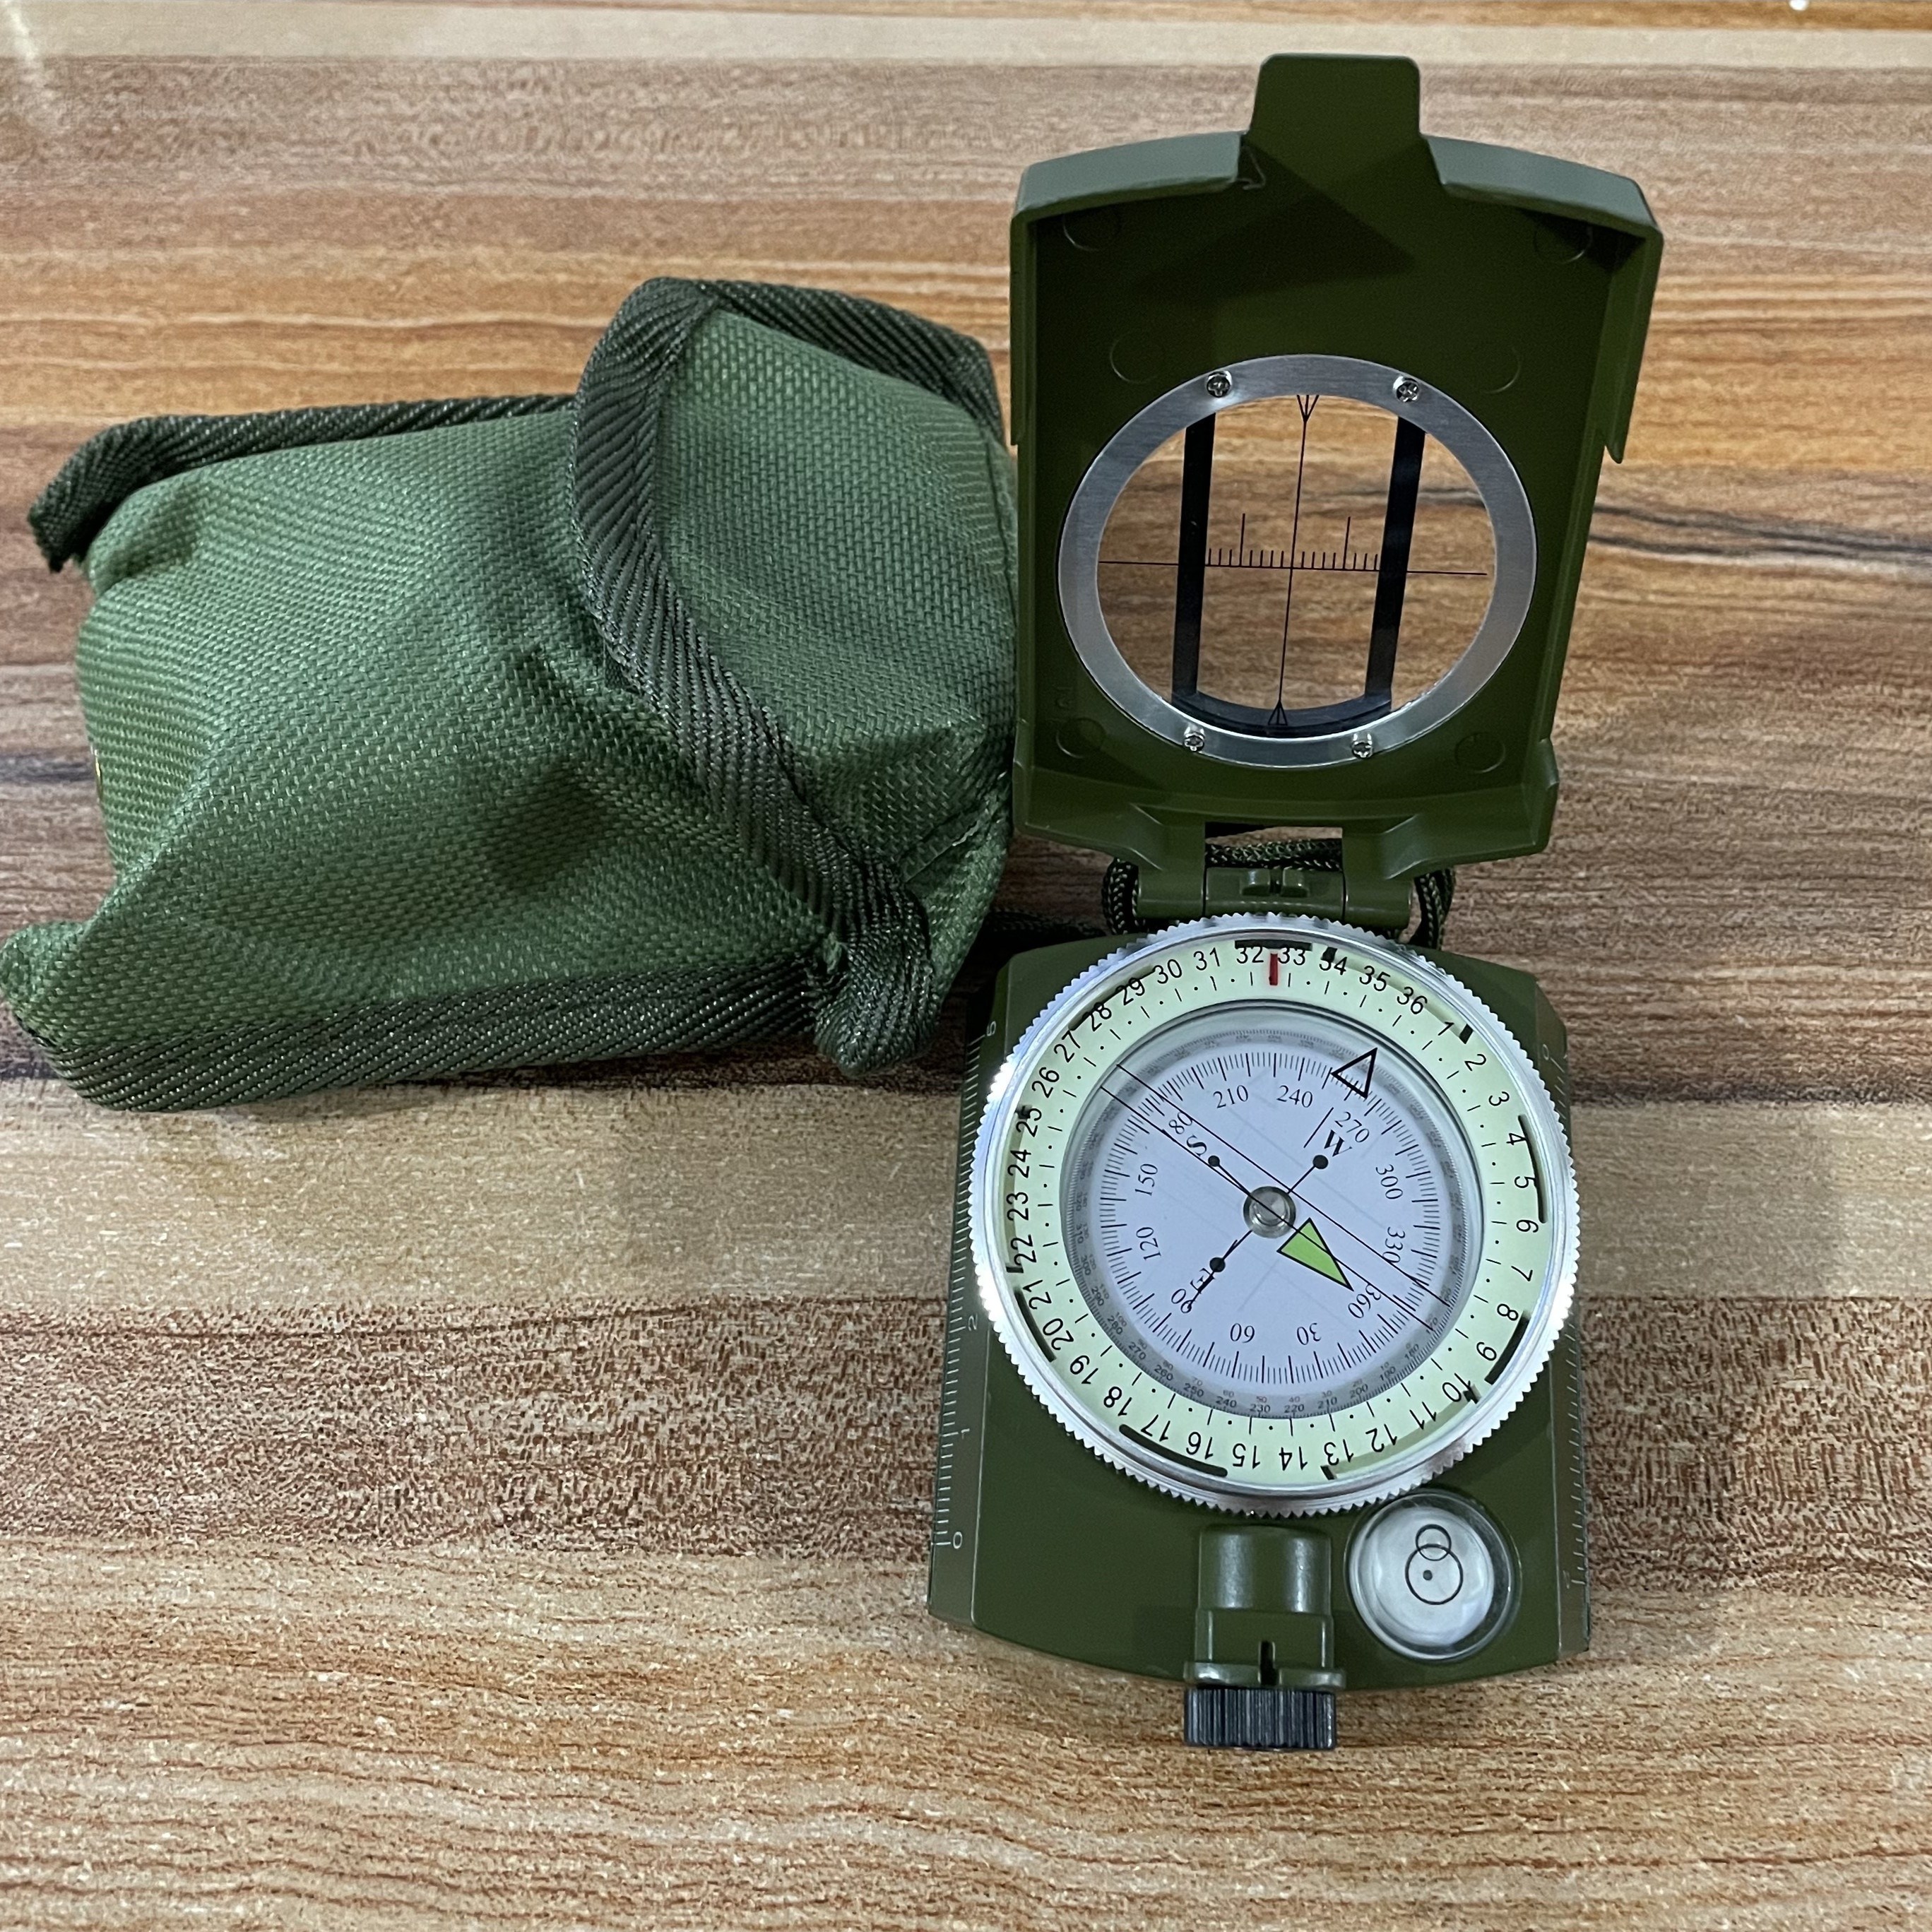 Brújula de observación militar Lensatic con bolsa de transporte, brújula  para senderismo, impermeable ya prueba de sacudidas, verde militar